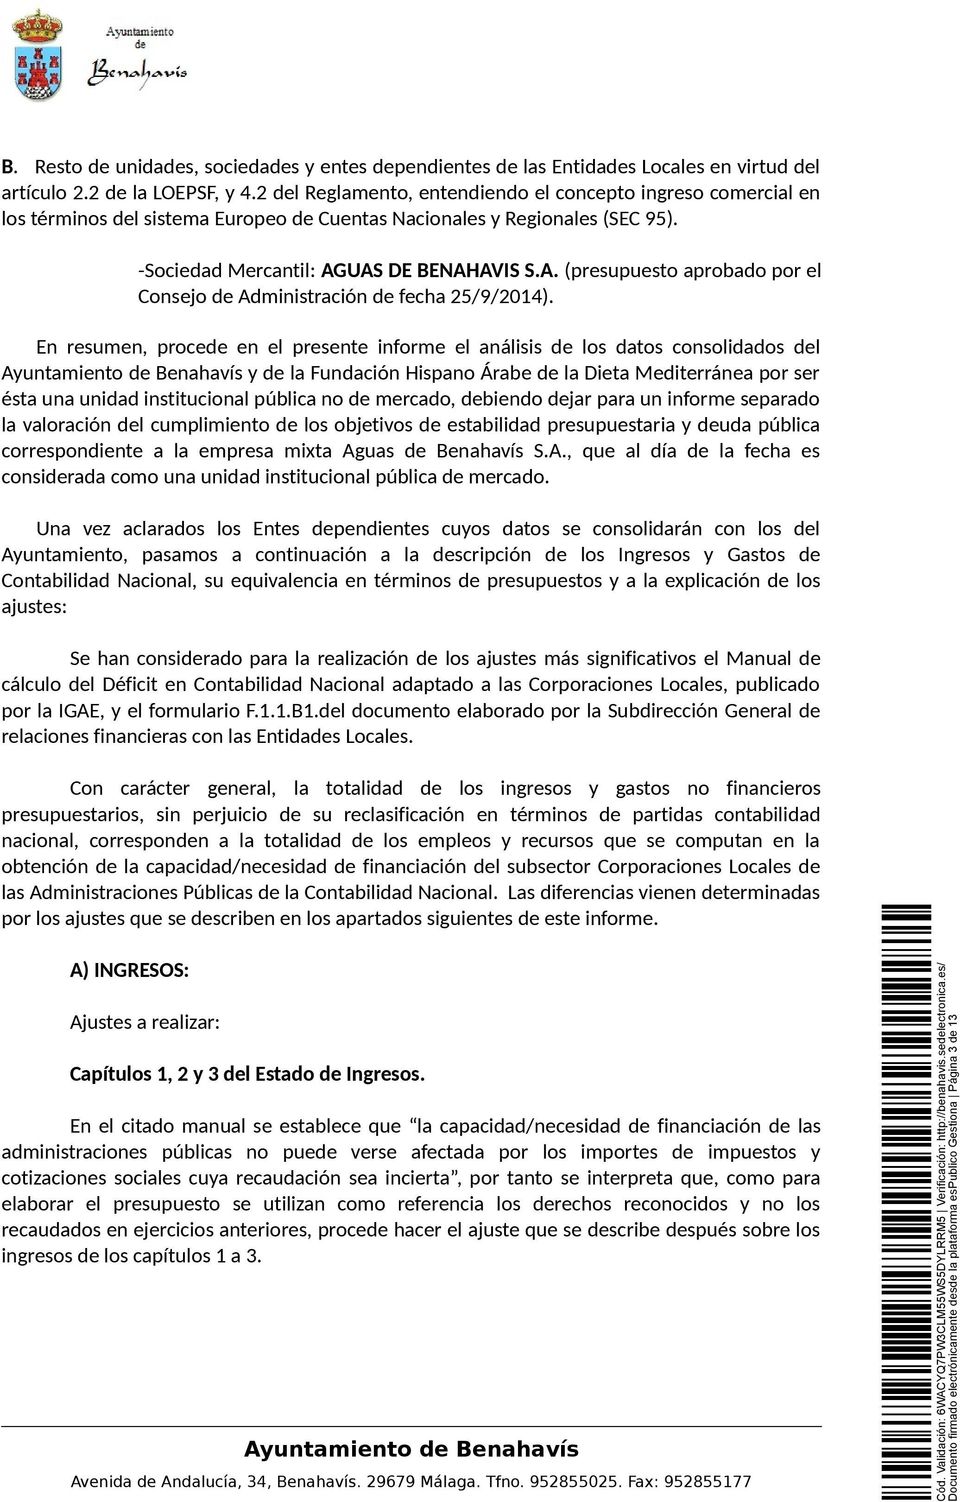 UAS DE BENAHAVIS S.A. (presupuesto aprobado por el Consejo de Administración de fecha 25/9/2014).